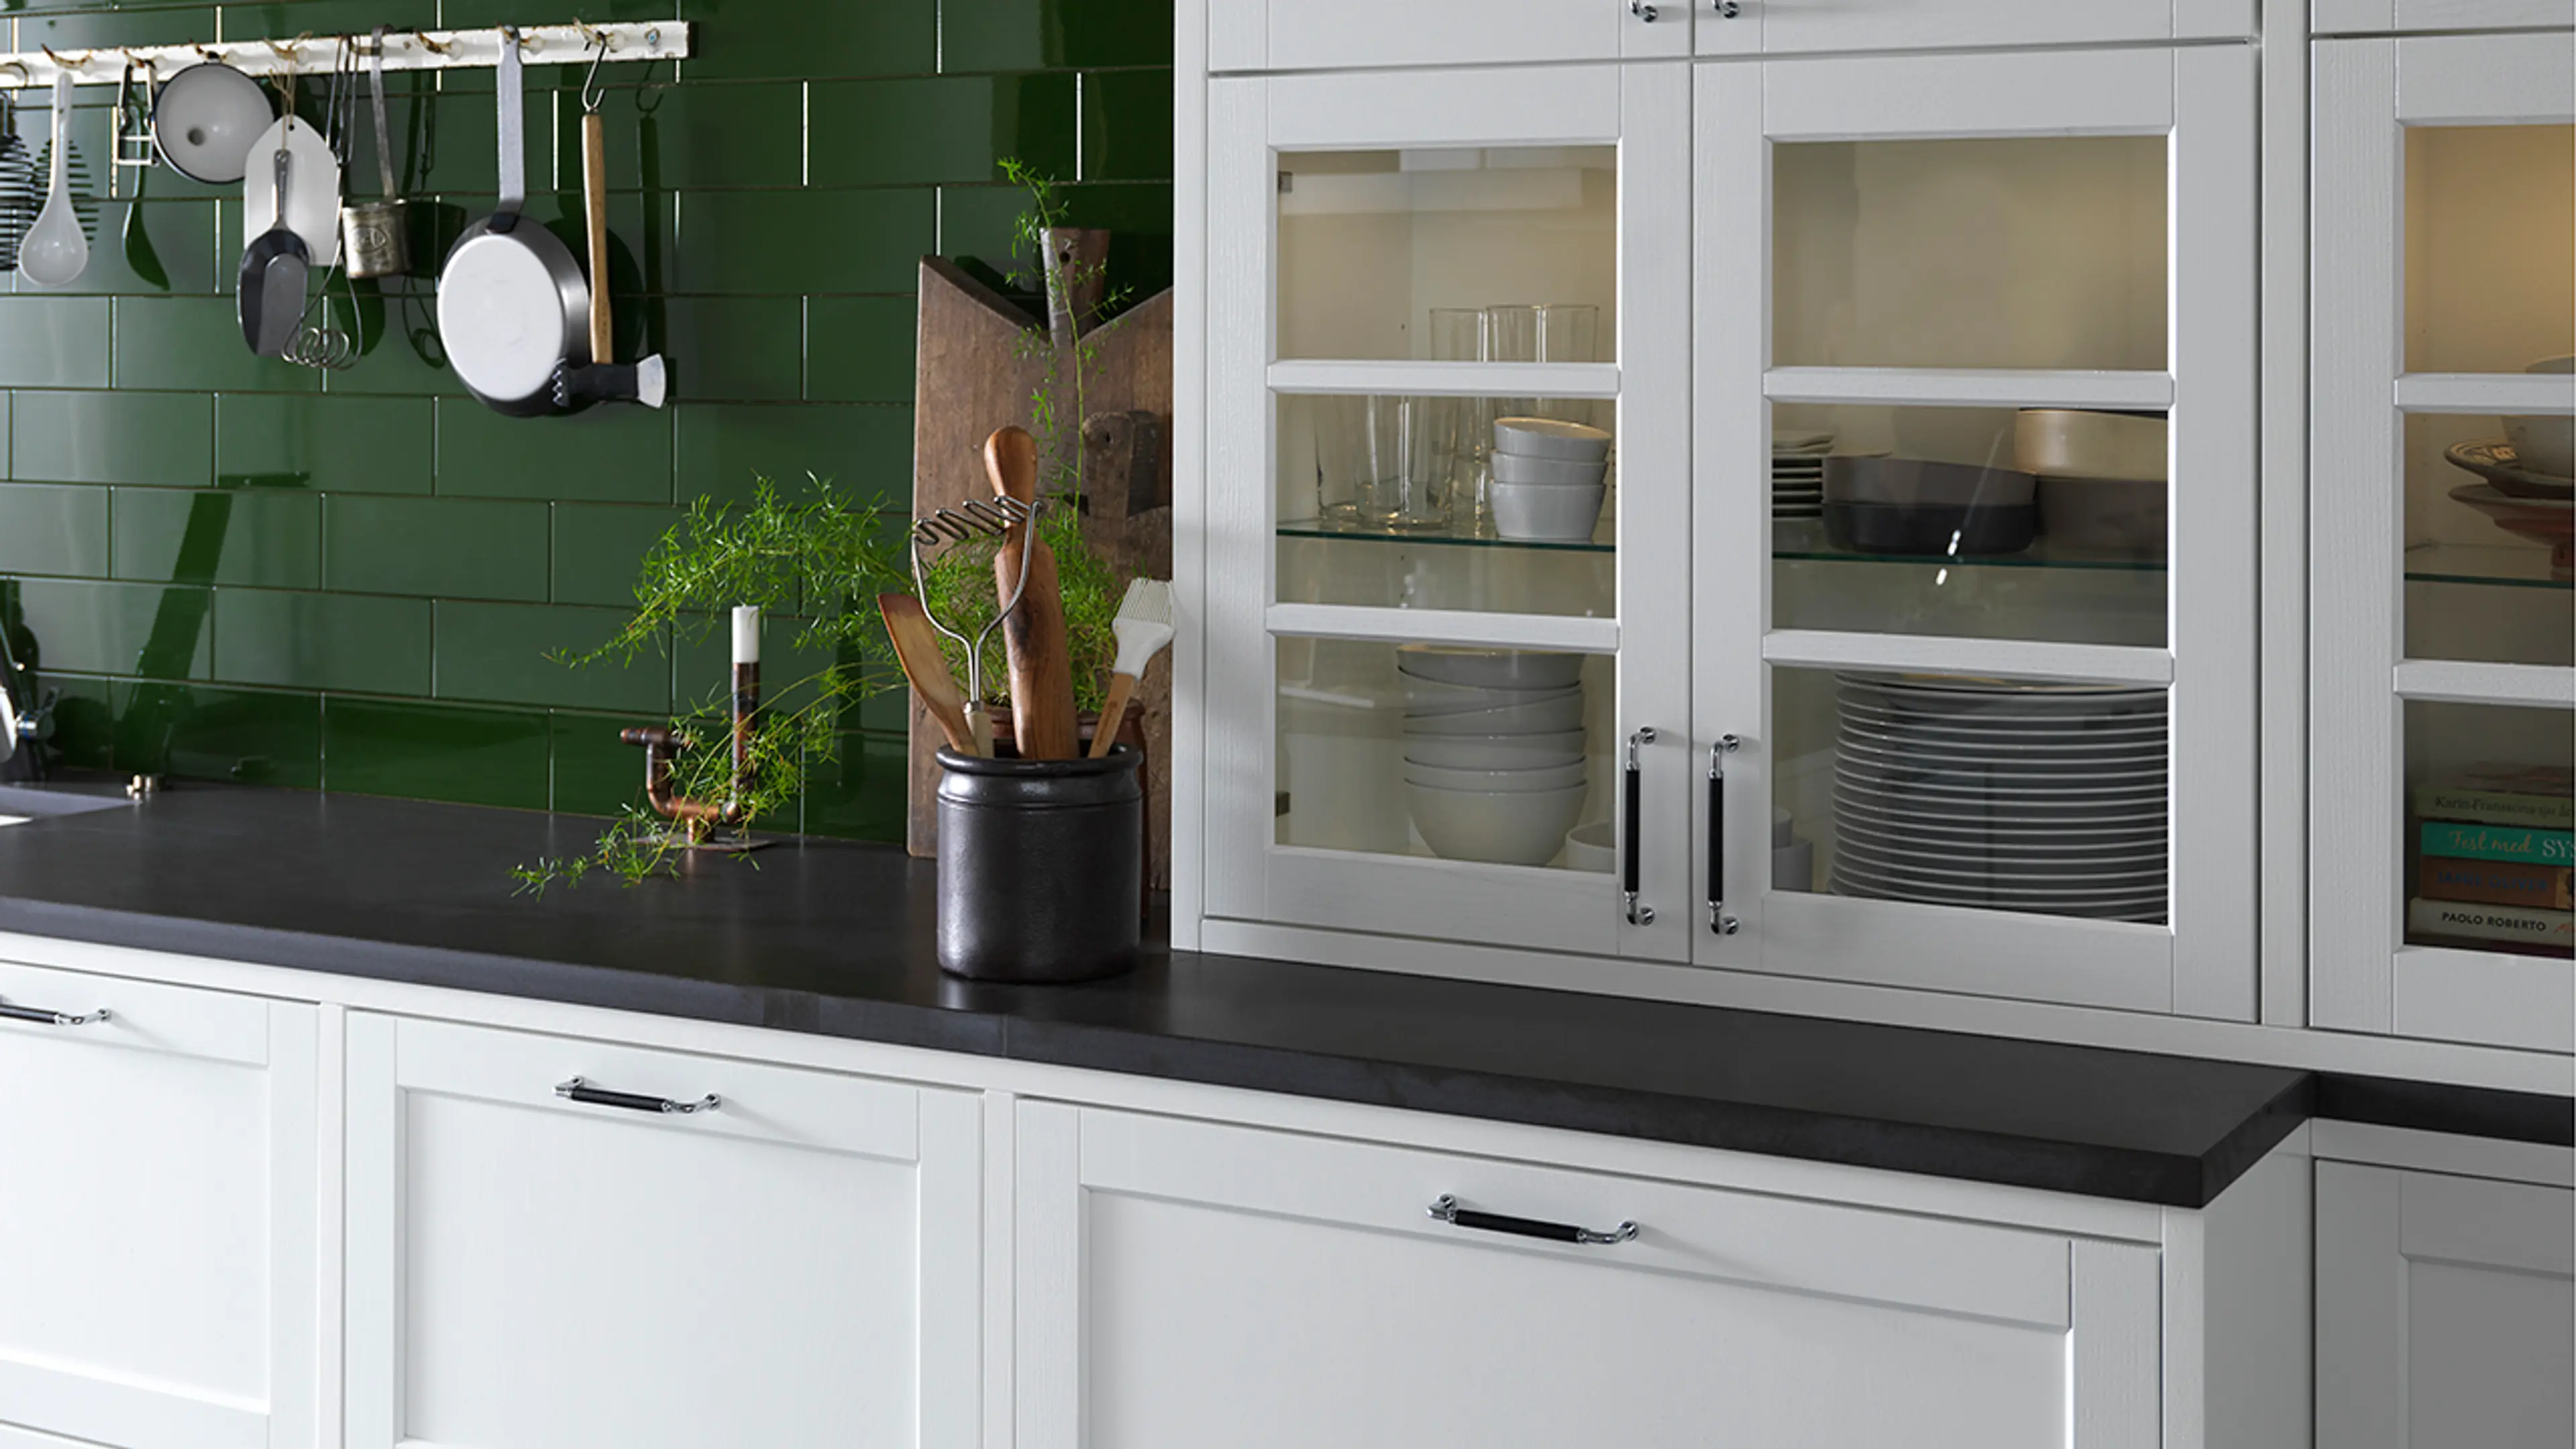 Detaljbilde av sort enkeplate til hvitt kjøkken med grønne flisvegger.